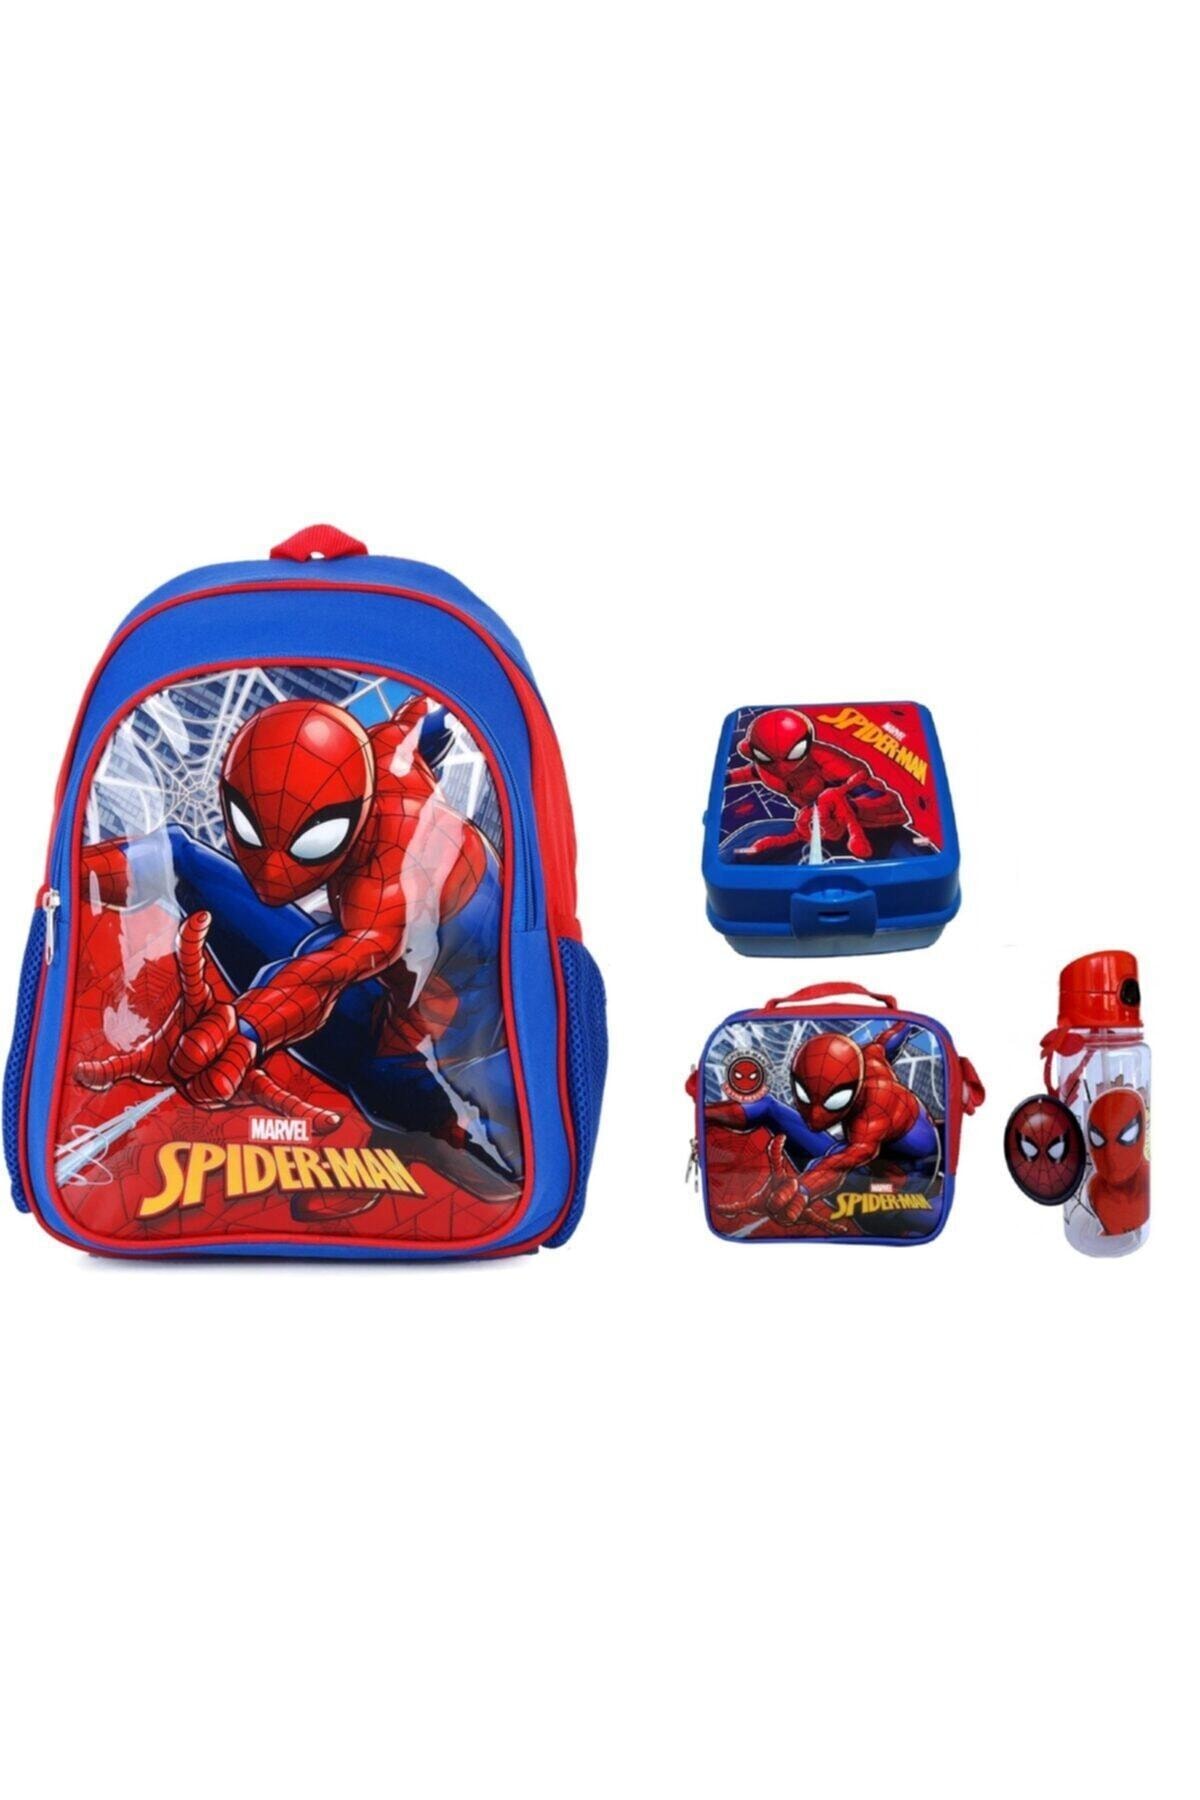 SPIDERMAN Lisanslı Örümcek Adam Ilk Okul Çantası + Beslenme Çantası + Suluk + Beslenme Kabı ( 4'lü Okul Seti )